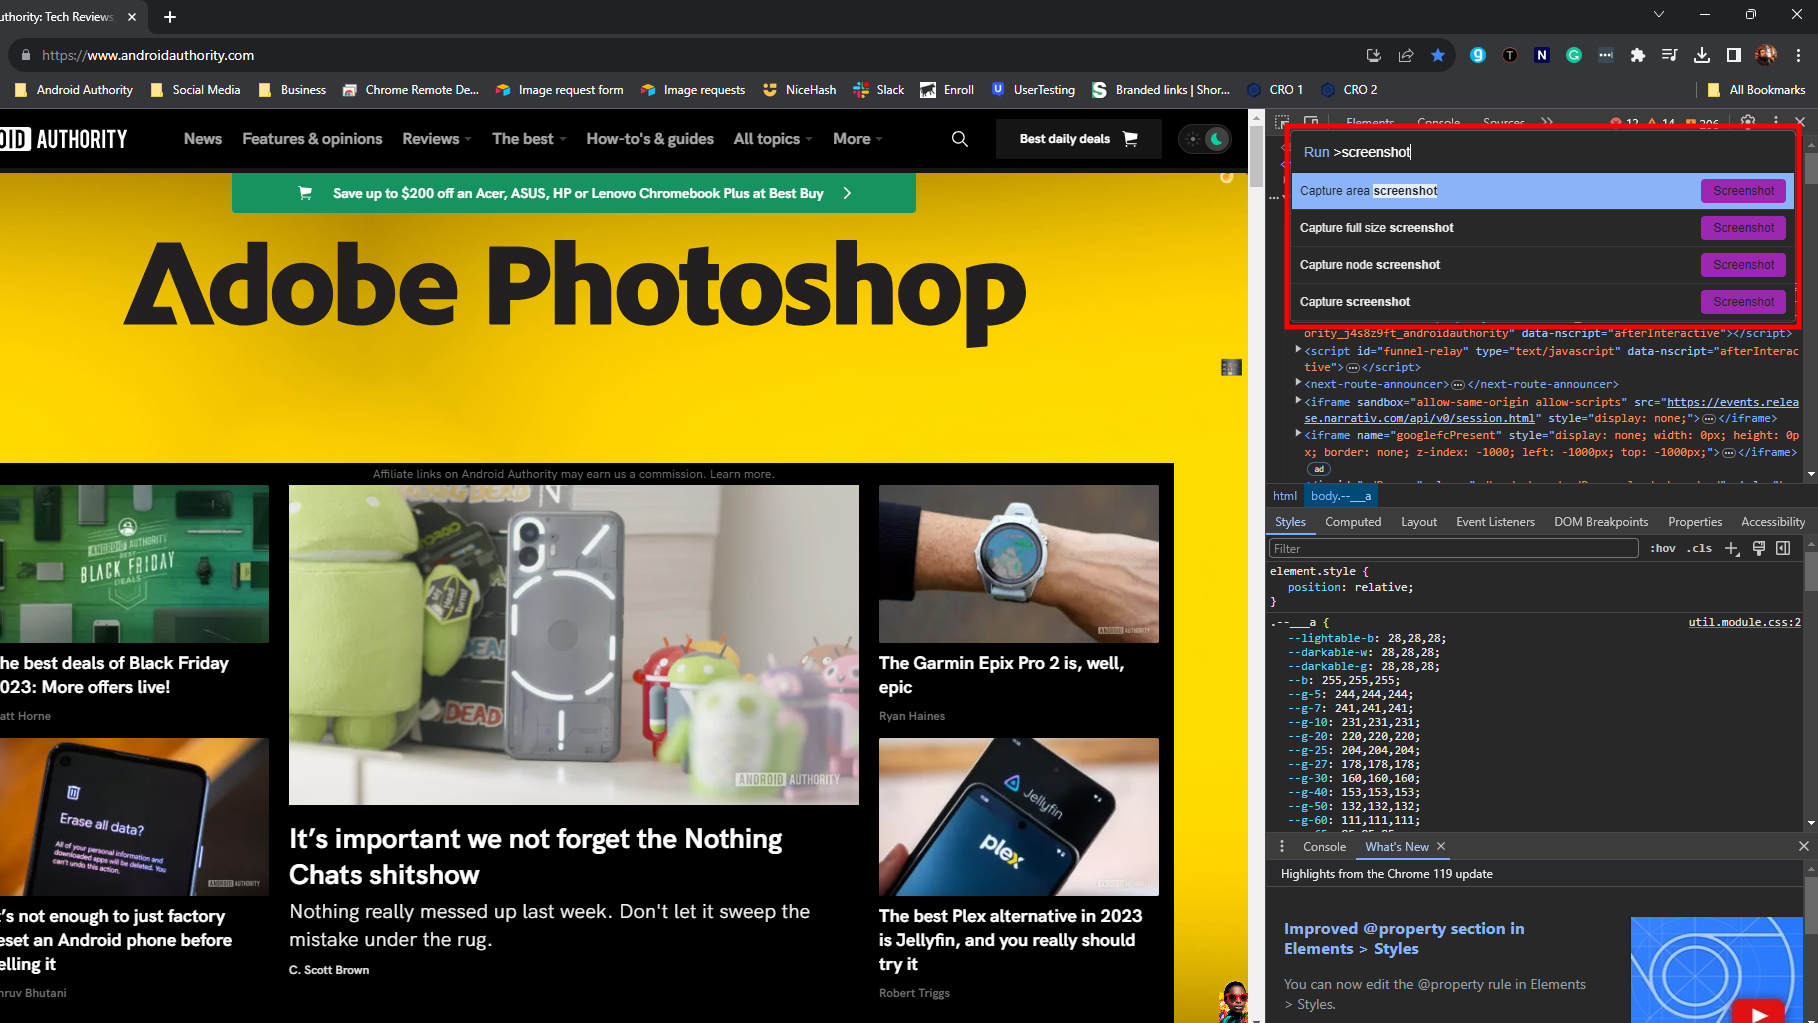 Take a screenshot using Chrome Inspect tool